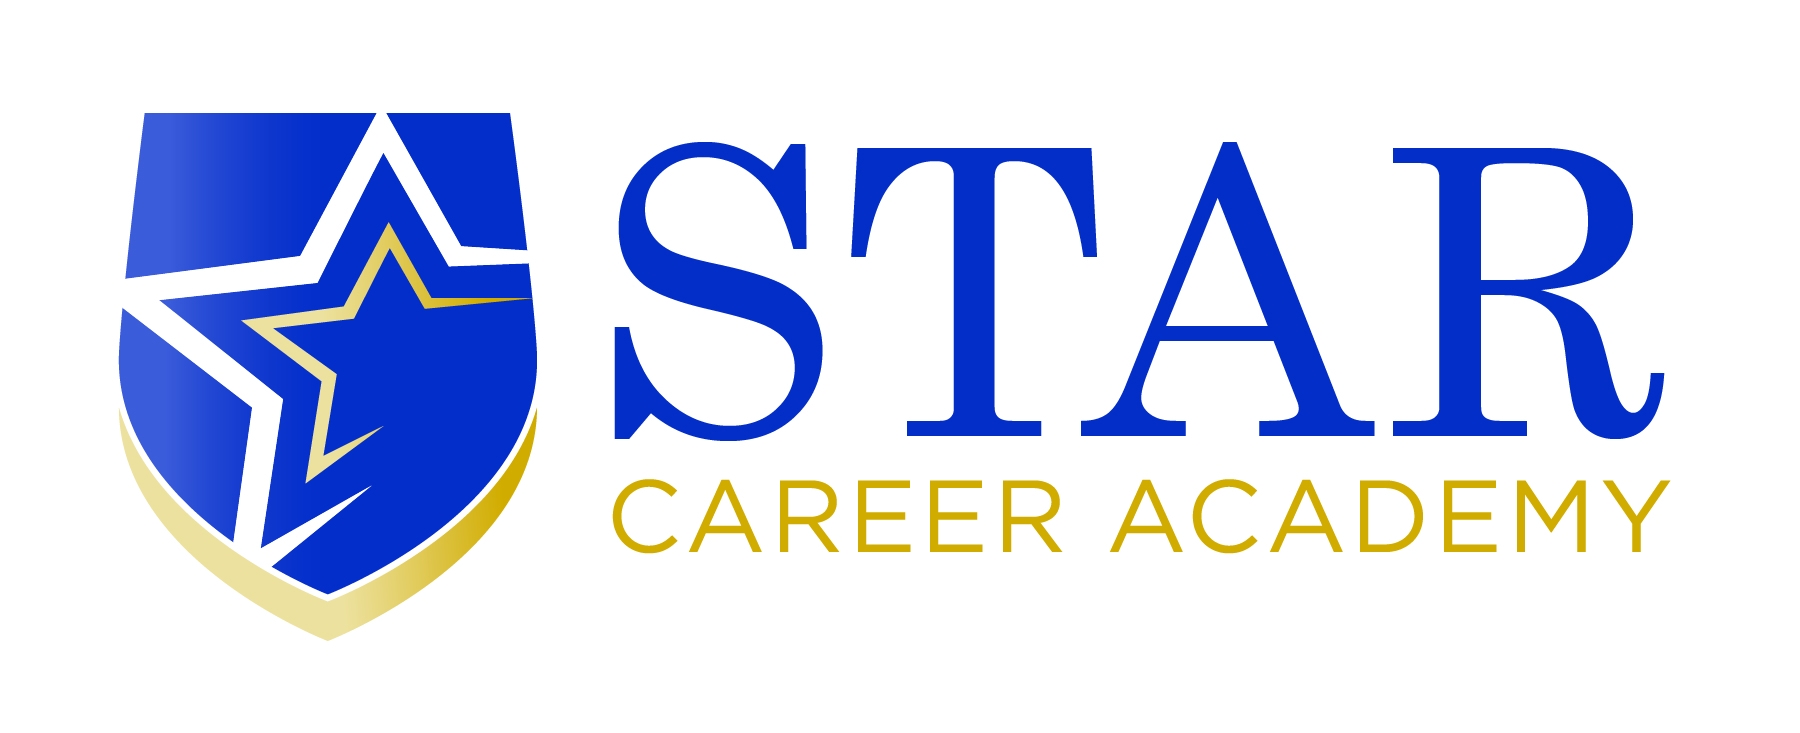 Star Career Academy